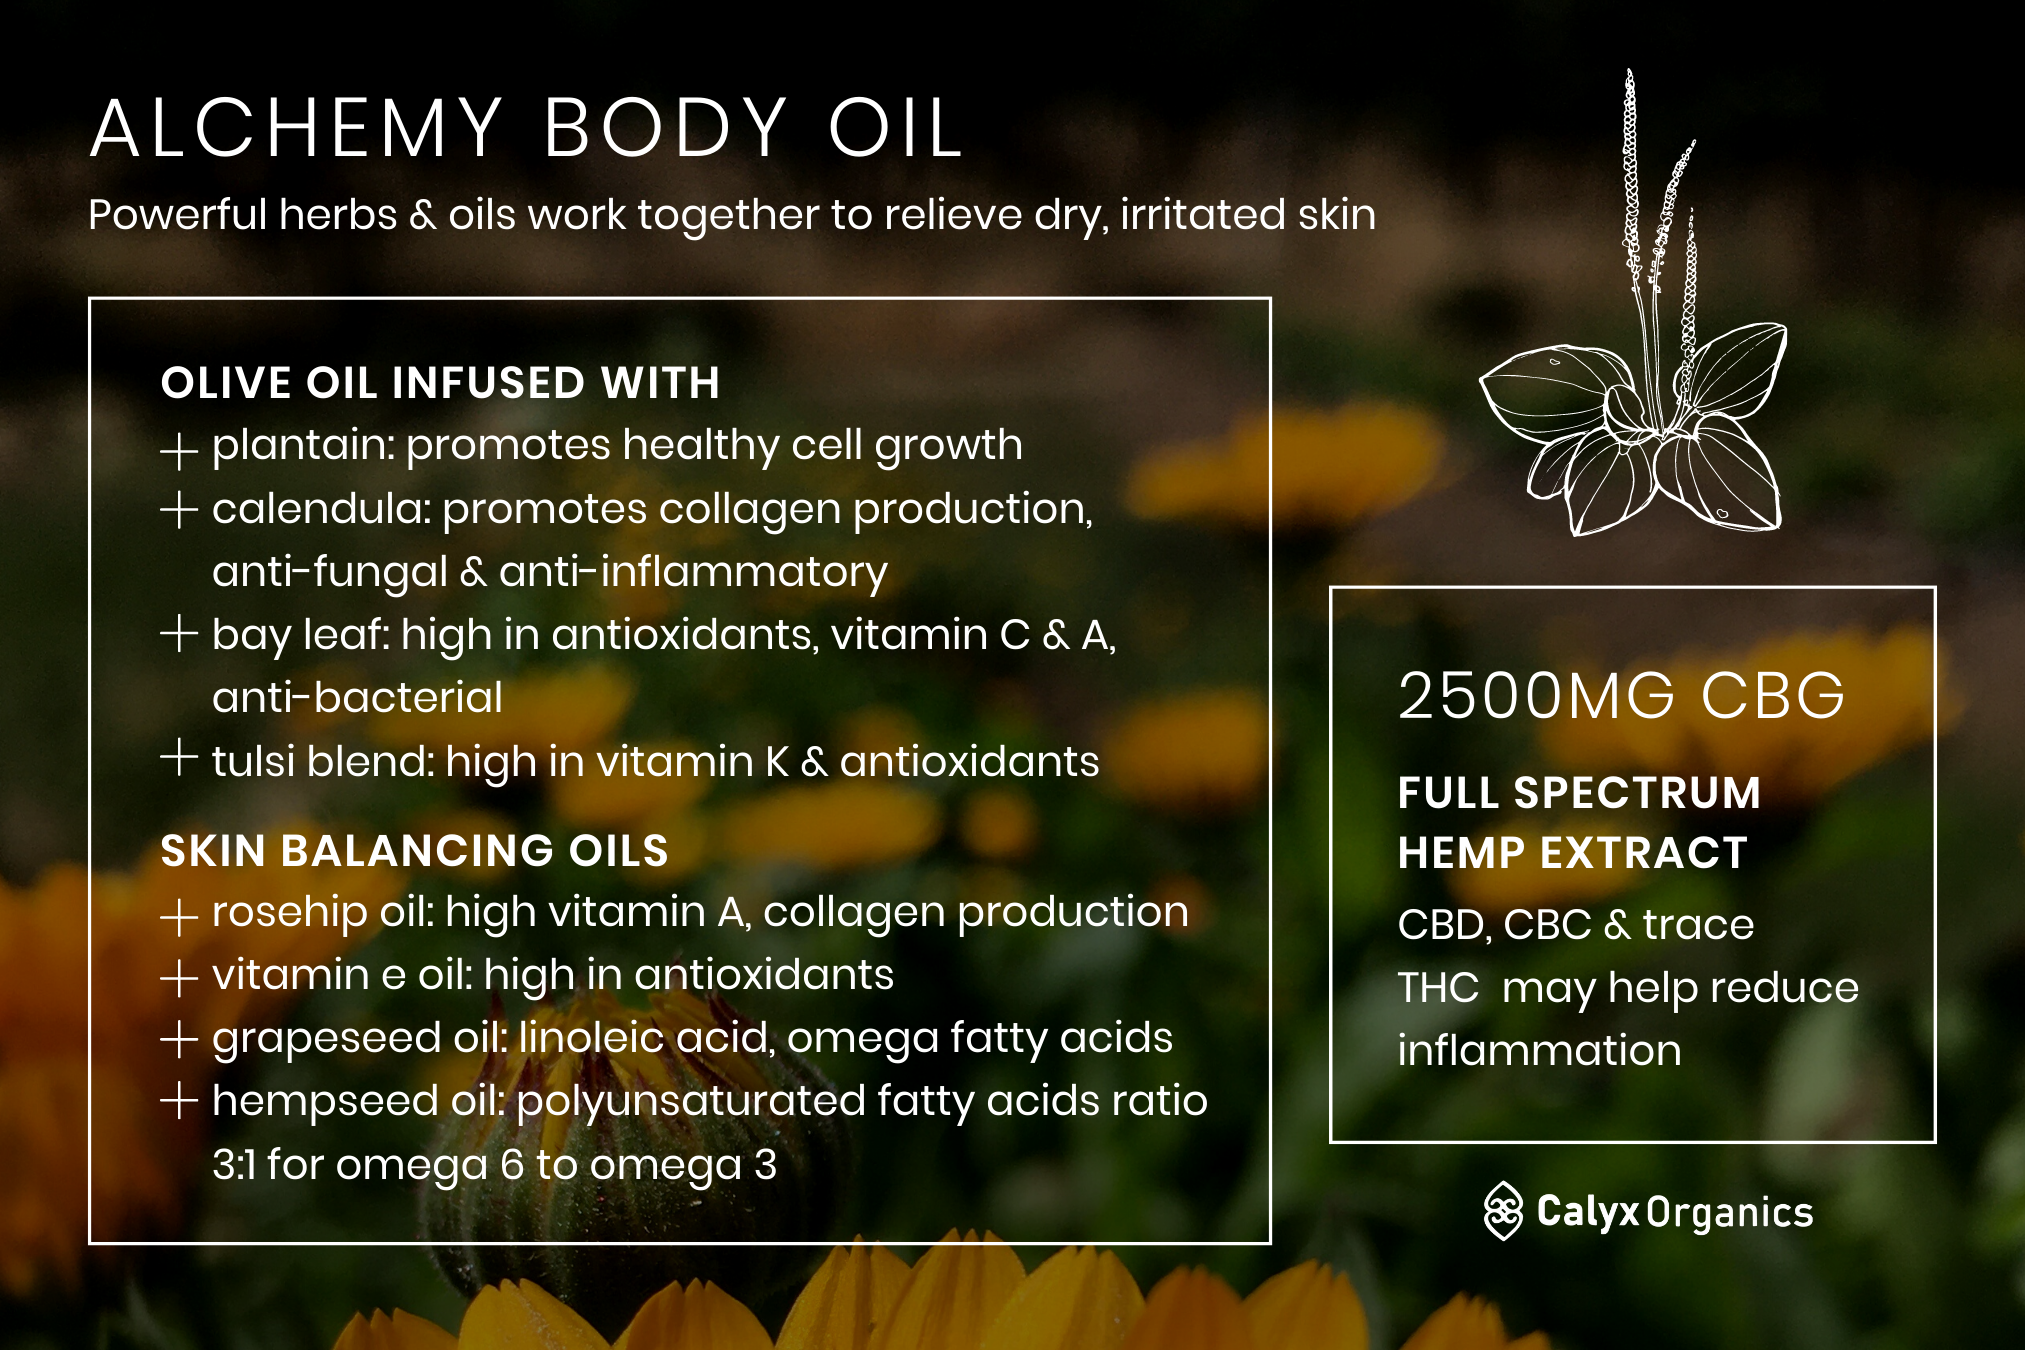 Alchemy Body Oil